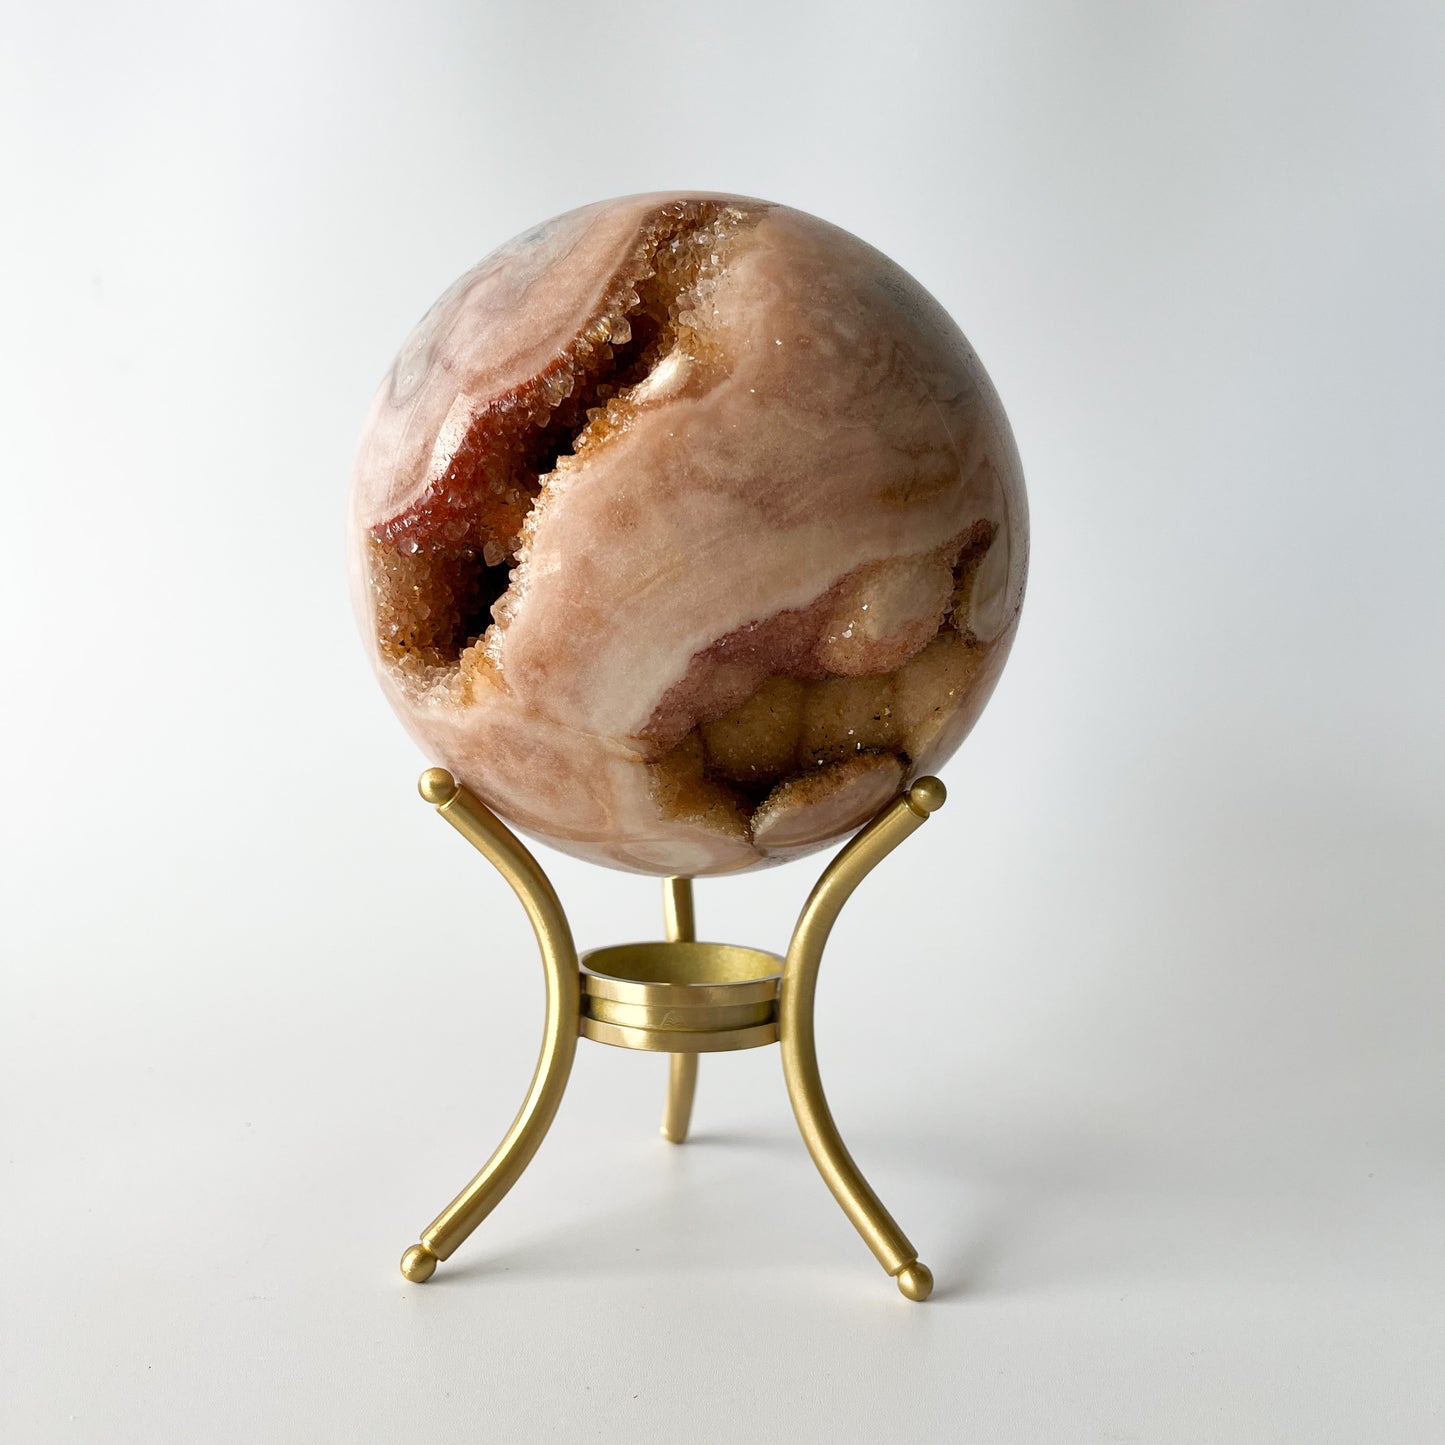 Pink Amethyst Sphere (gallery piece) / 2.090kg